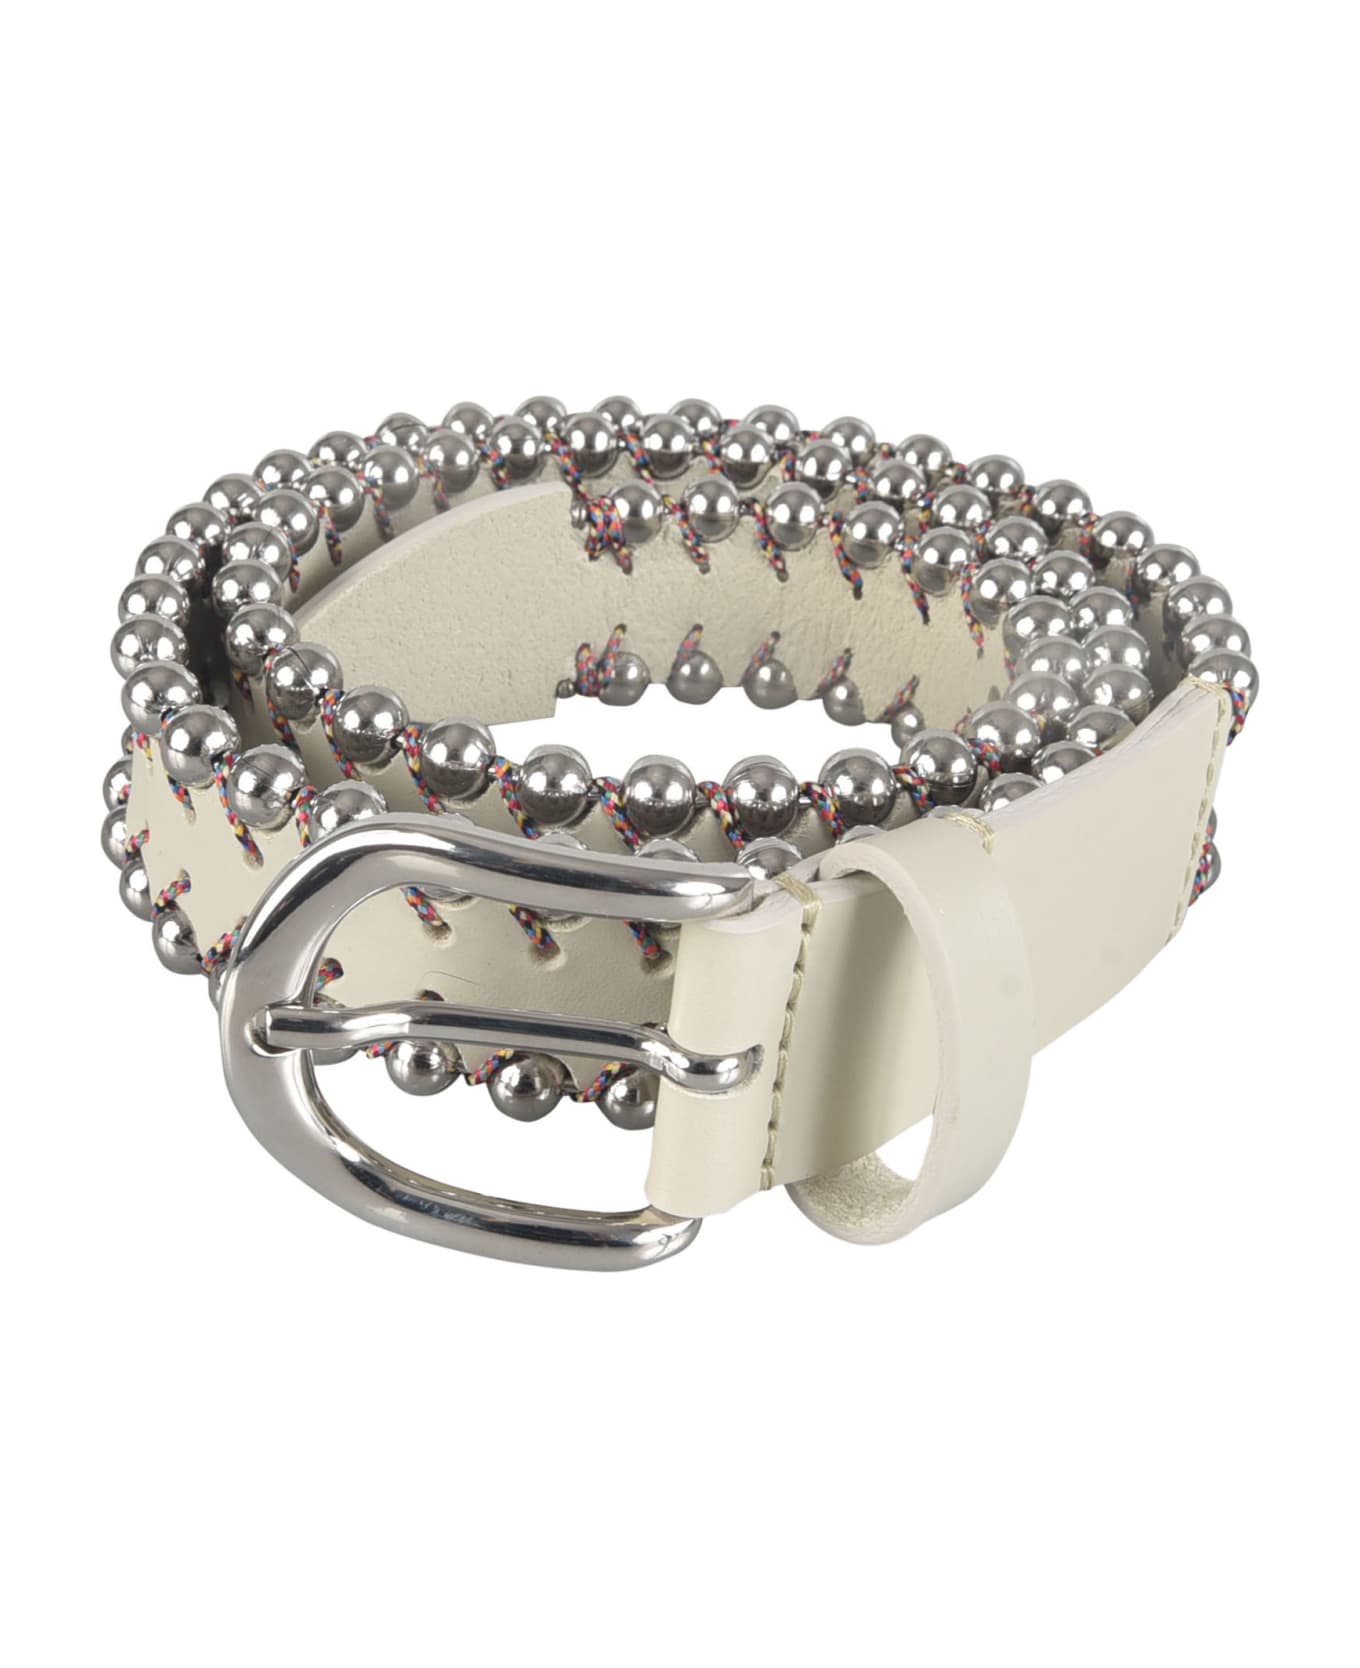 Isabel Marant Embellished Belt - Silver